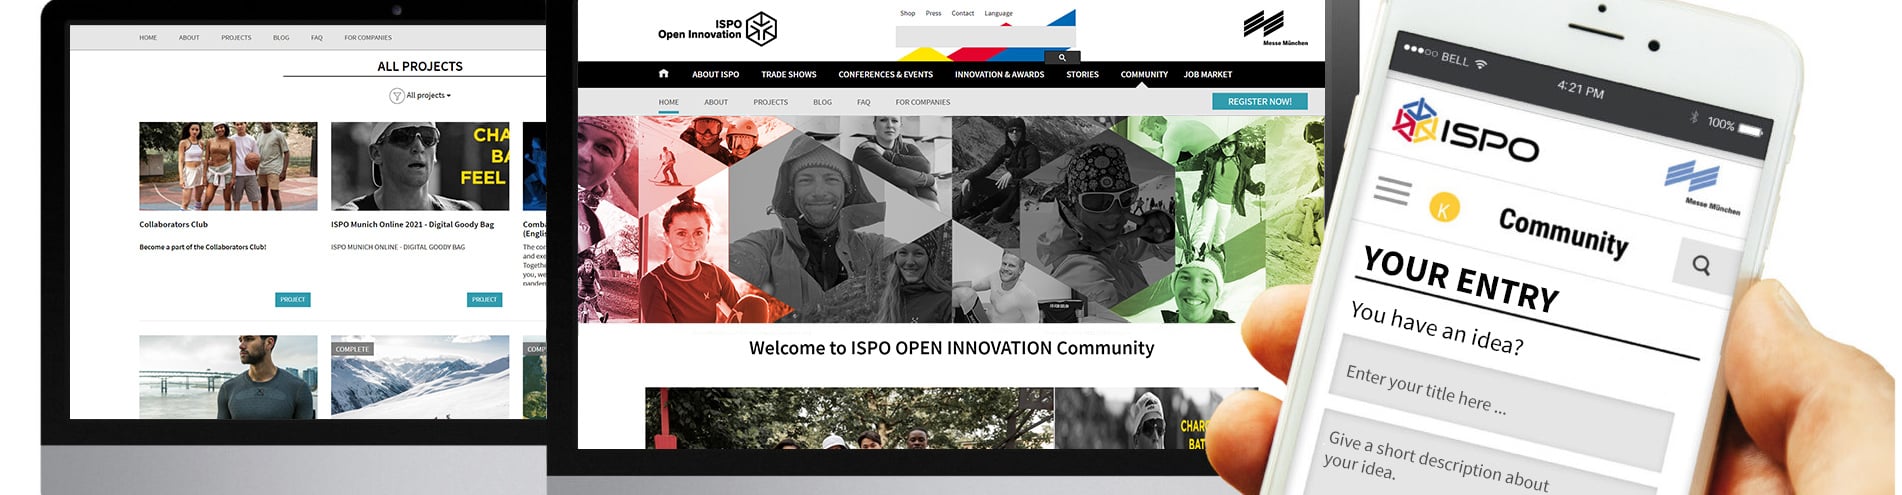 innolytcs-innovation-open-innovation-community_header